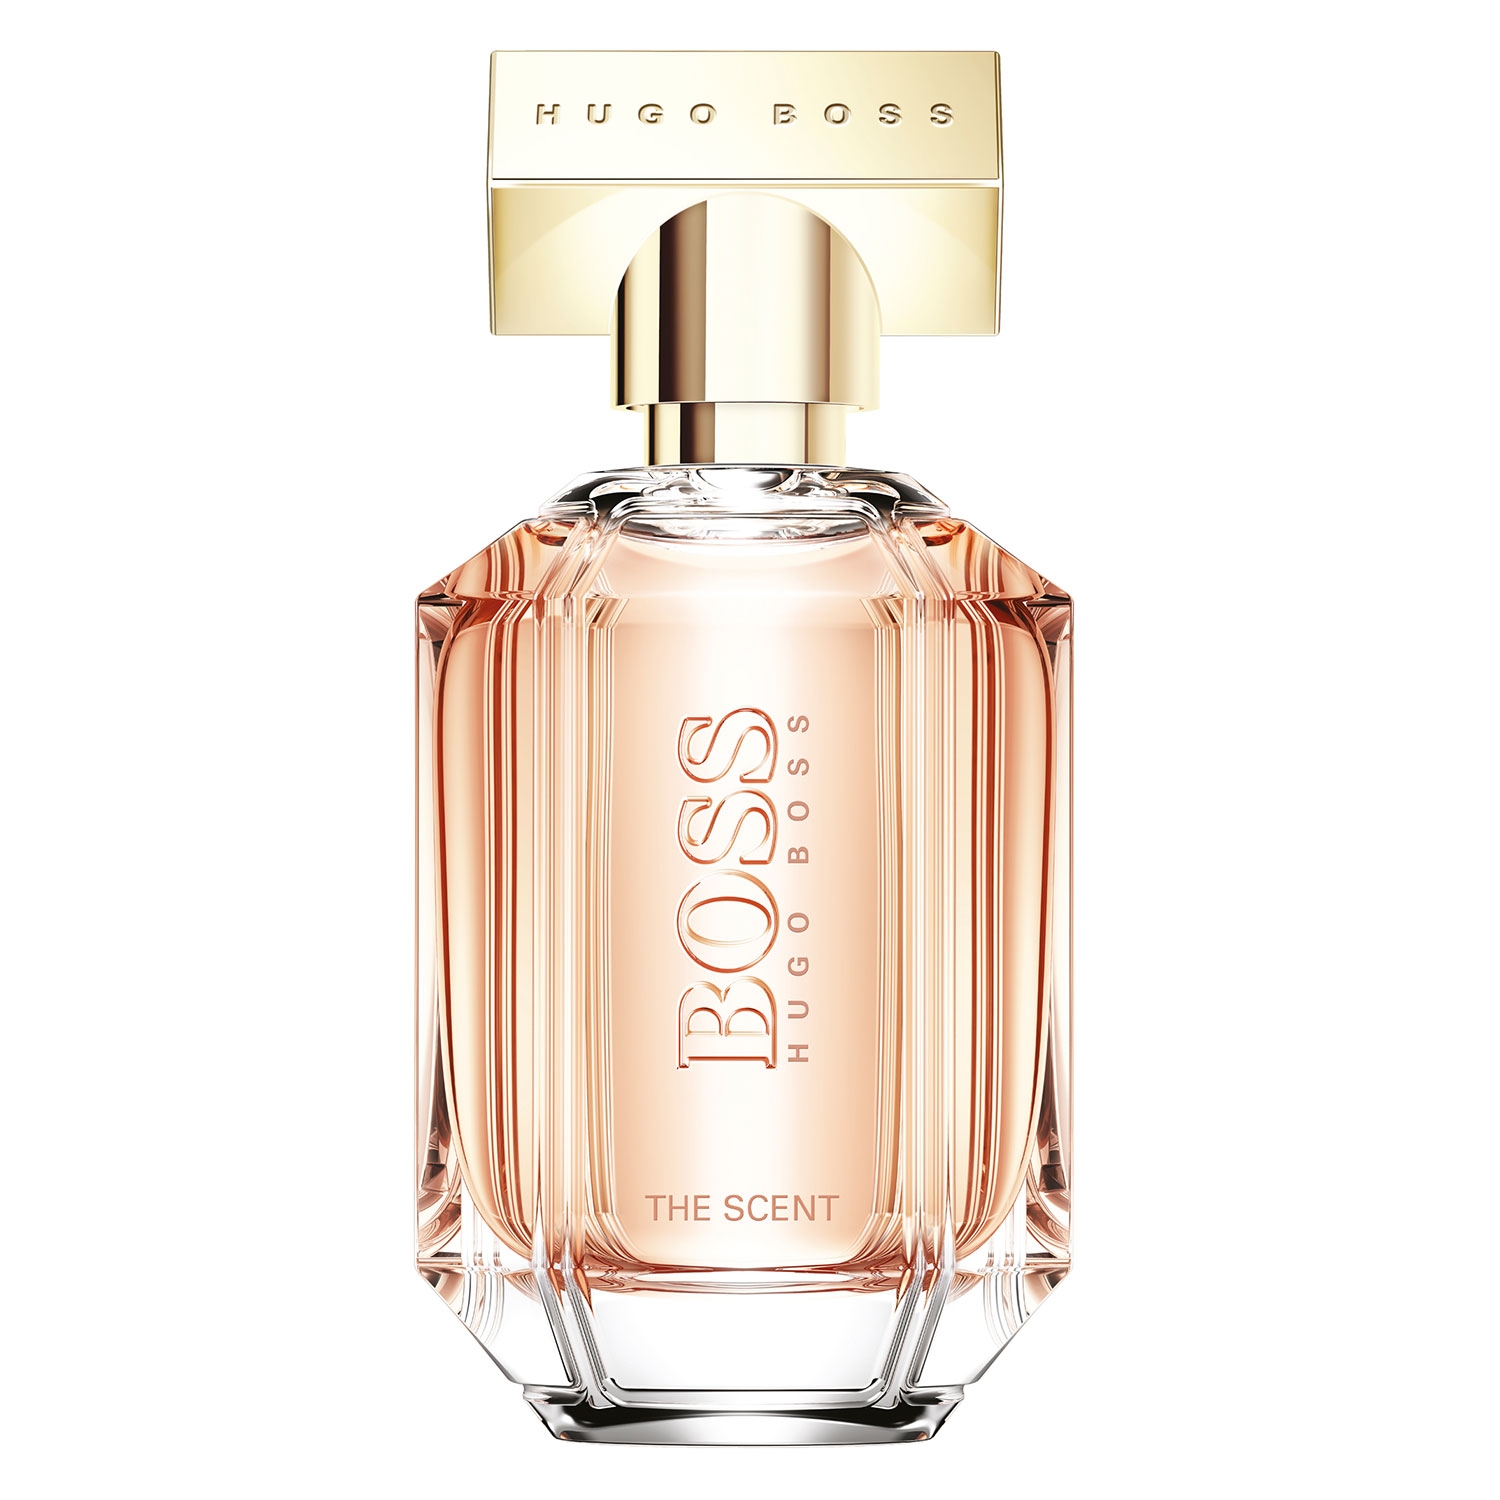 Produktbild von Boss The Scent - Eau de Parfum for Her